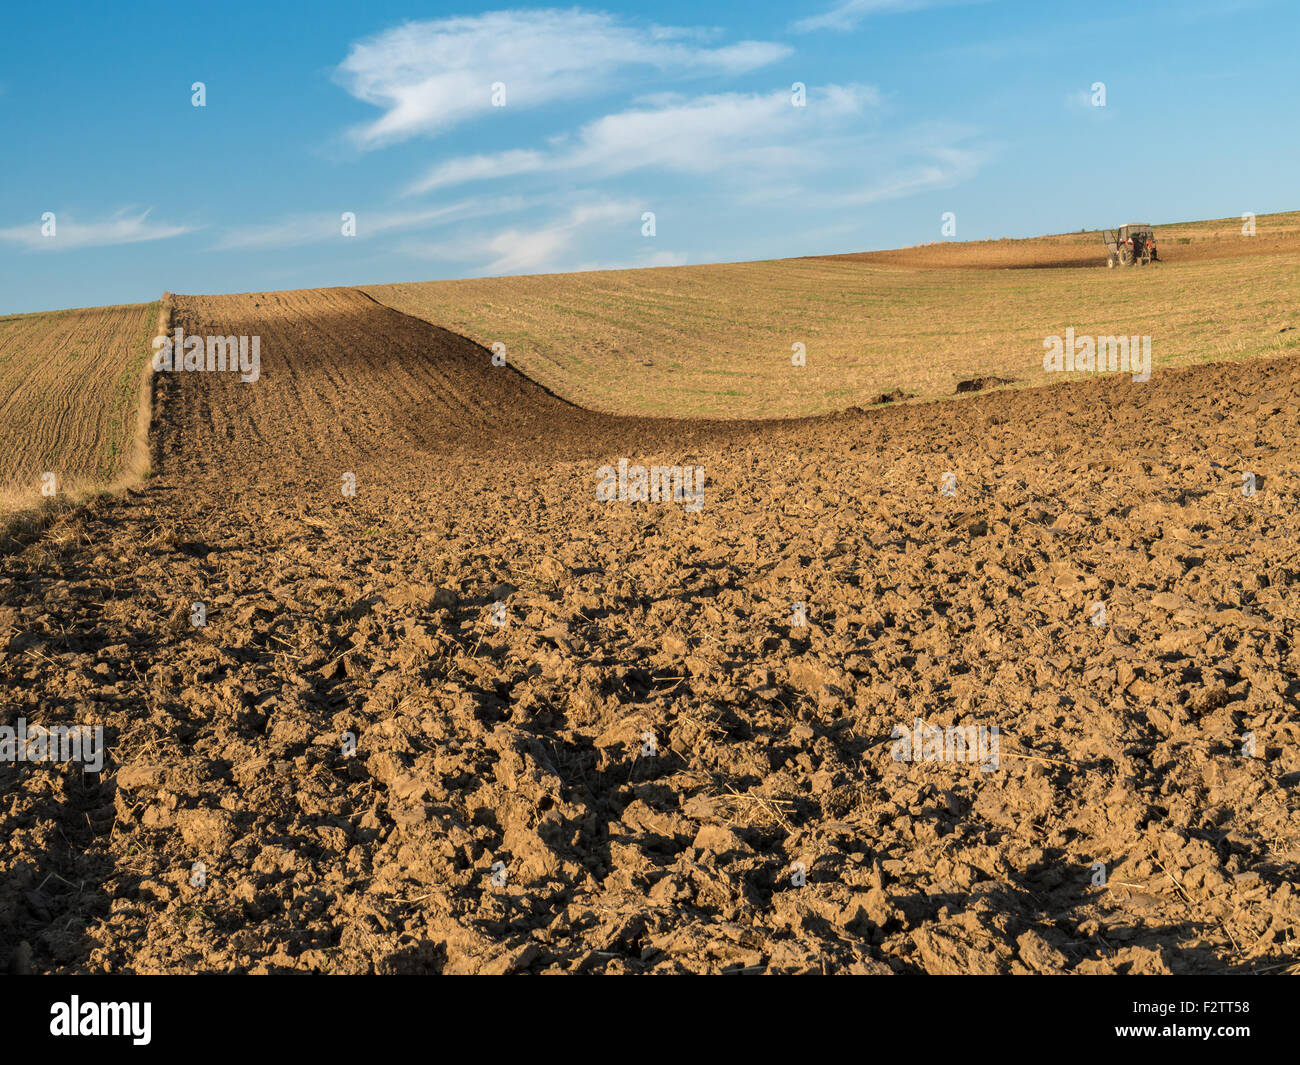 Trattore agricolo straziante campo di seminativi Foto Stock